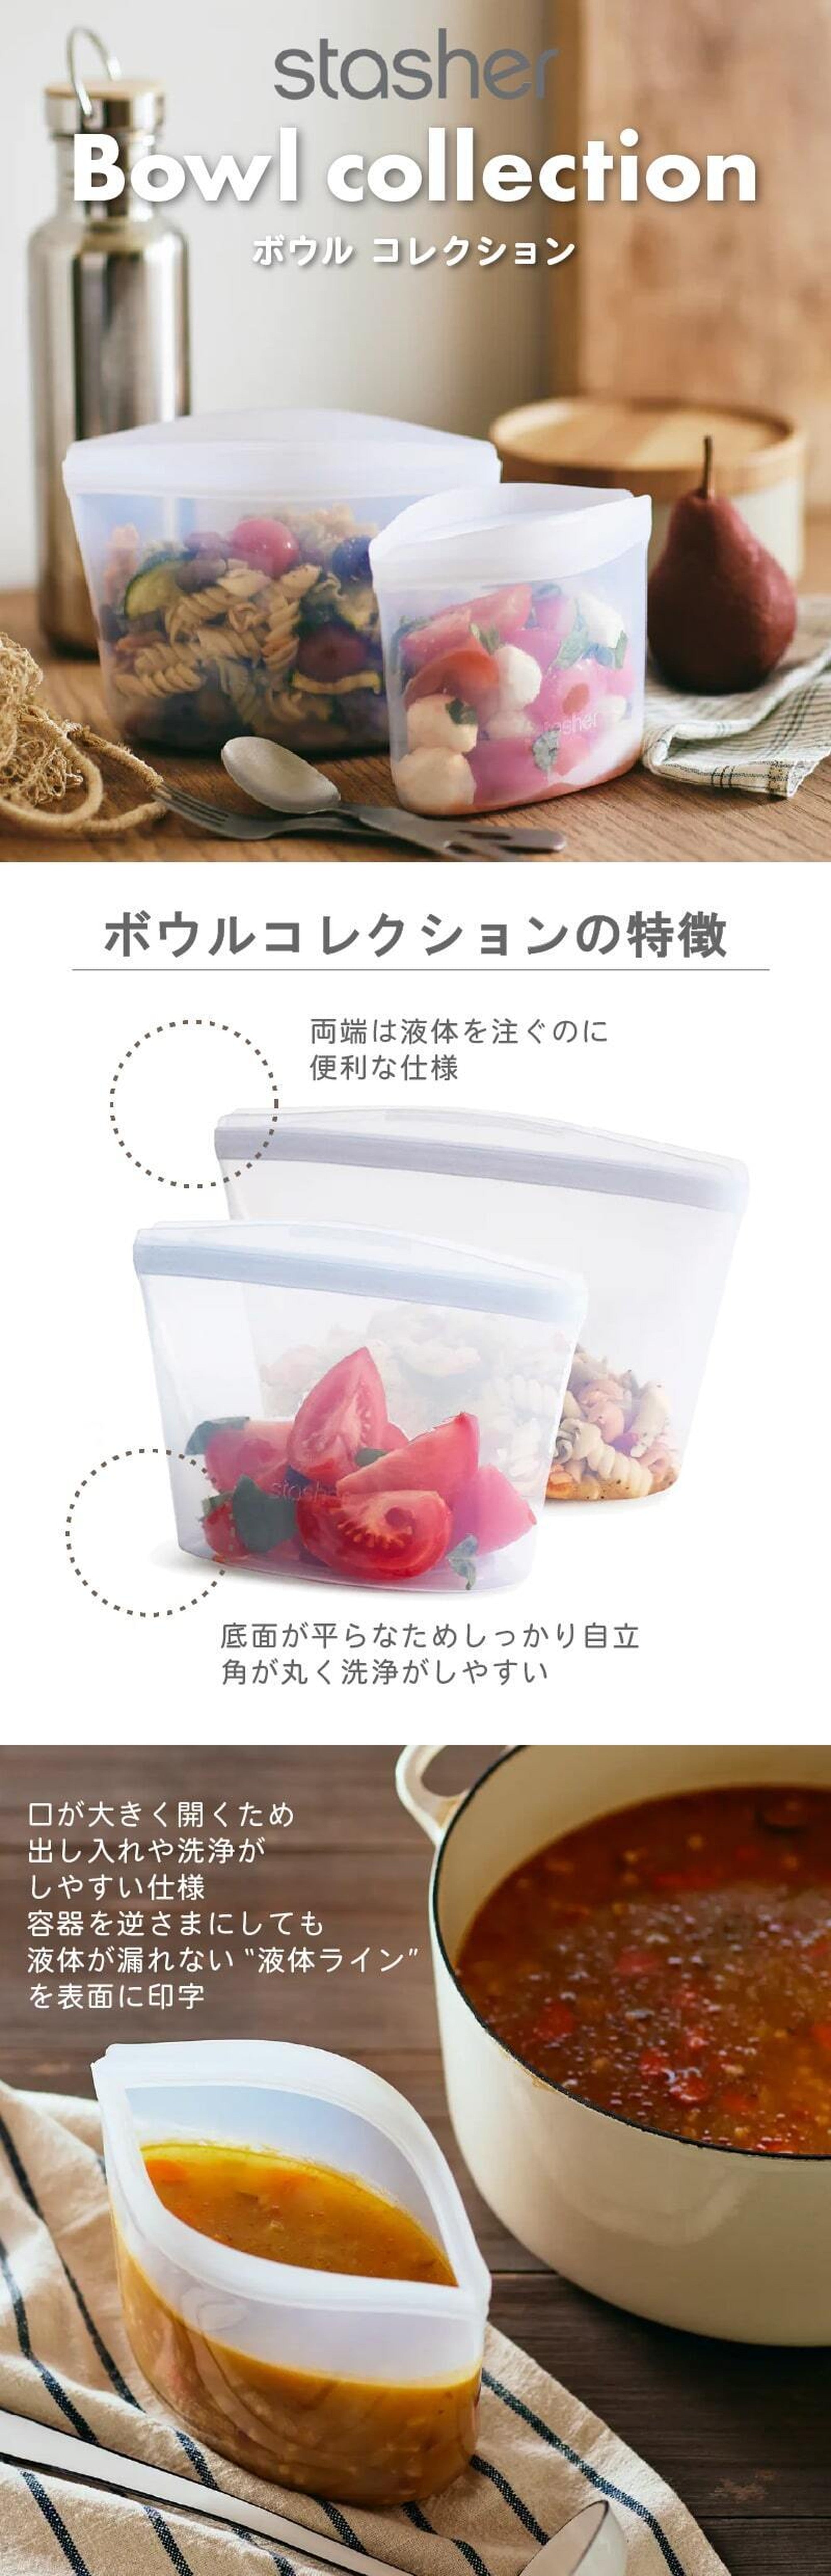 耐熱シリコンバッグ 食品収納袋 耐熱 耐冷 保存袋 アウトドア キャン